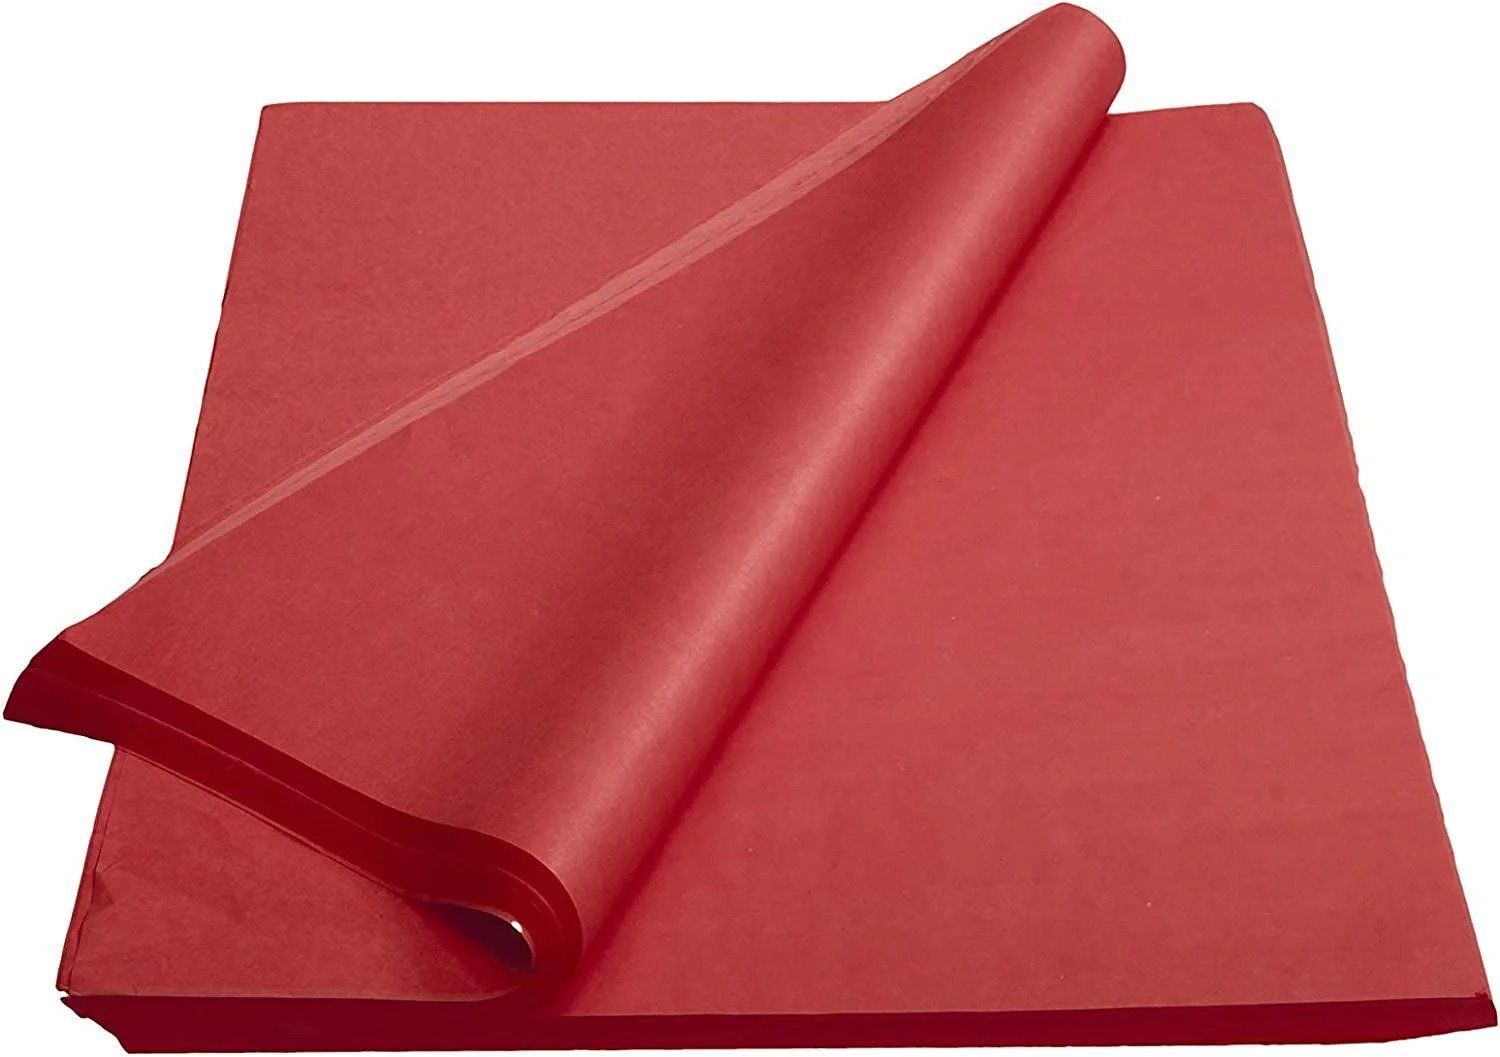 Kırmızı Pelur Kağıt 1kg 70x100 cm - Ekonomik Seri - 68-72 Sayfa